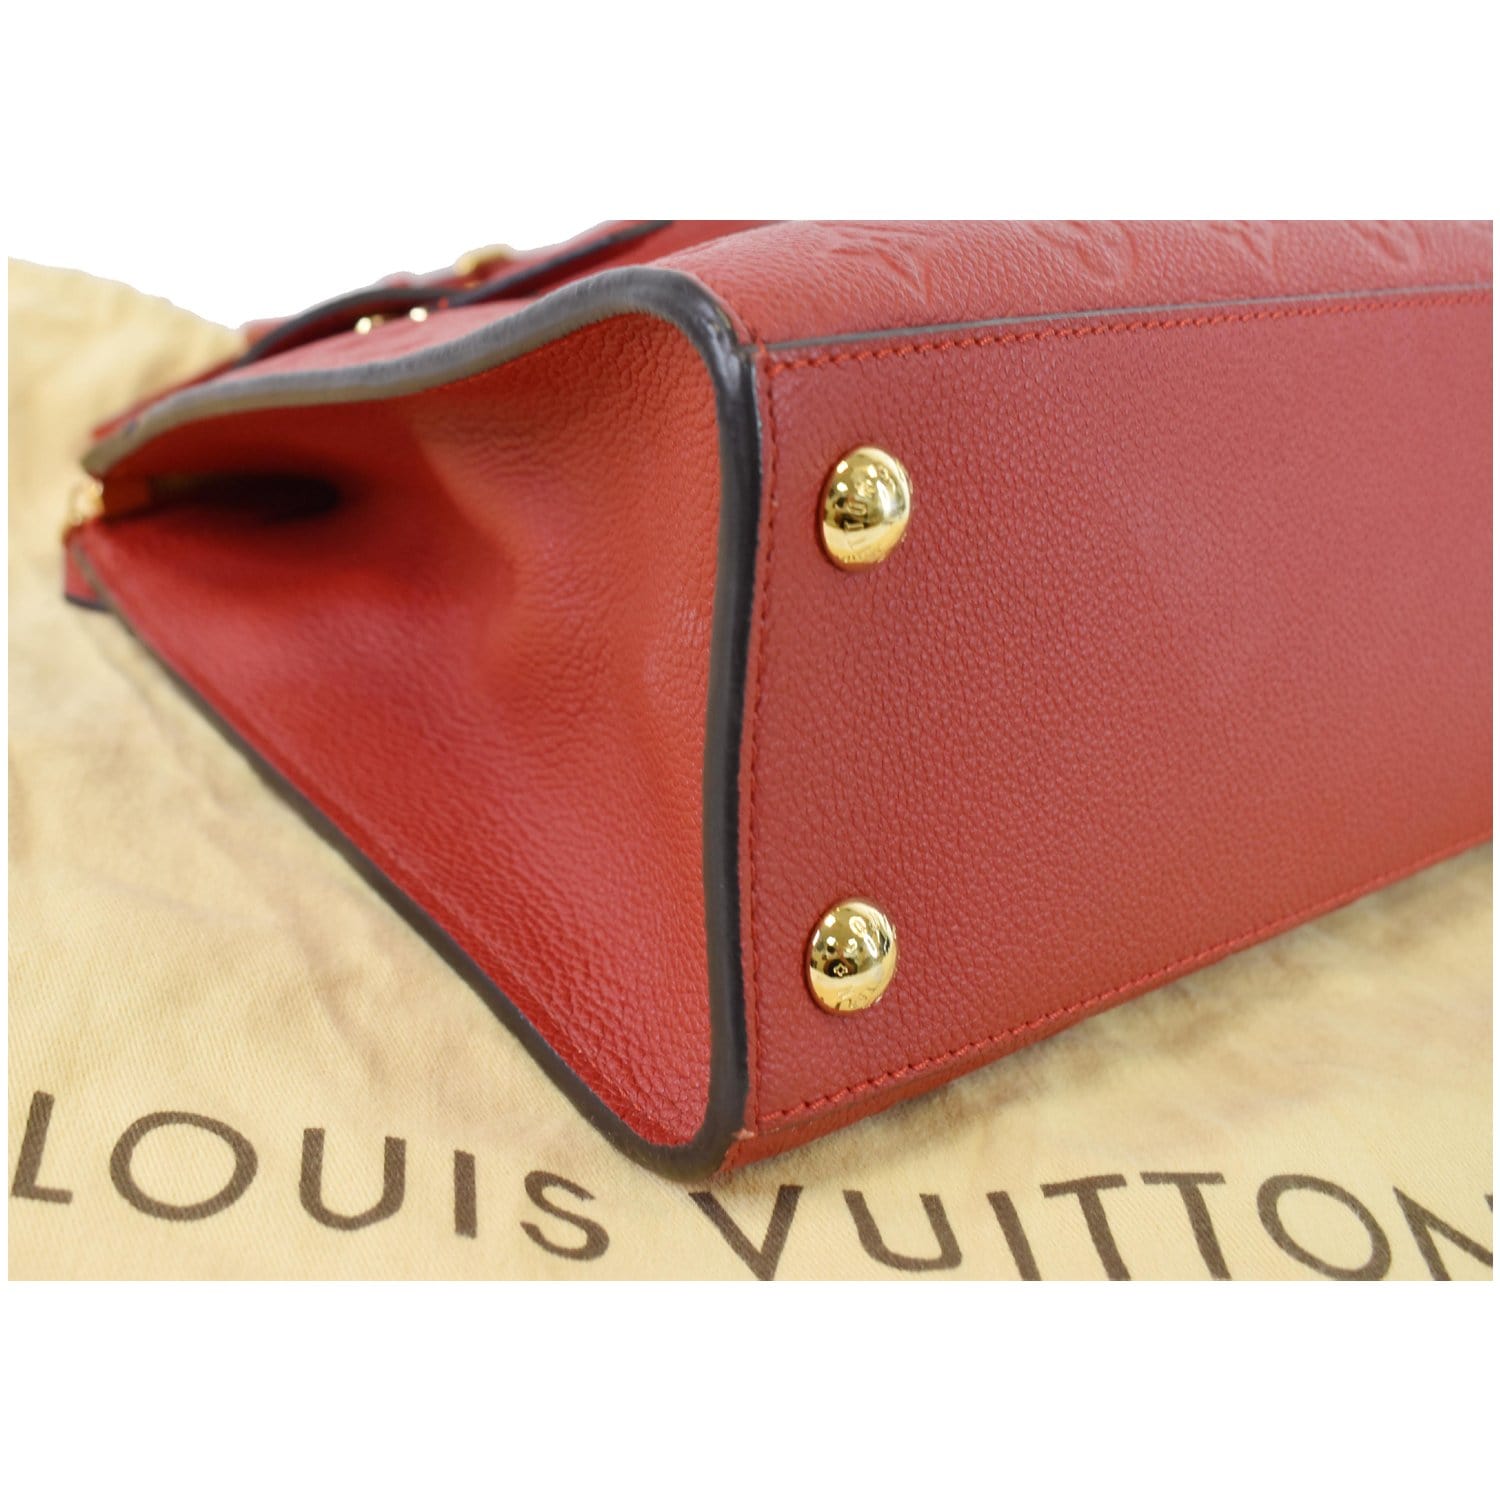 Louis Vuitton Pont-Neuf Wallet in monogram Empreinte Leather in